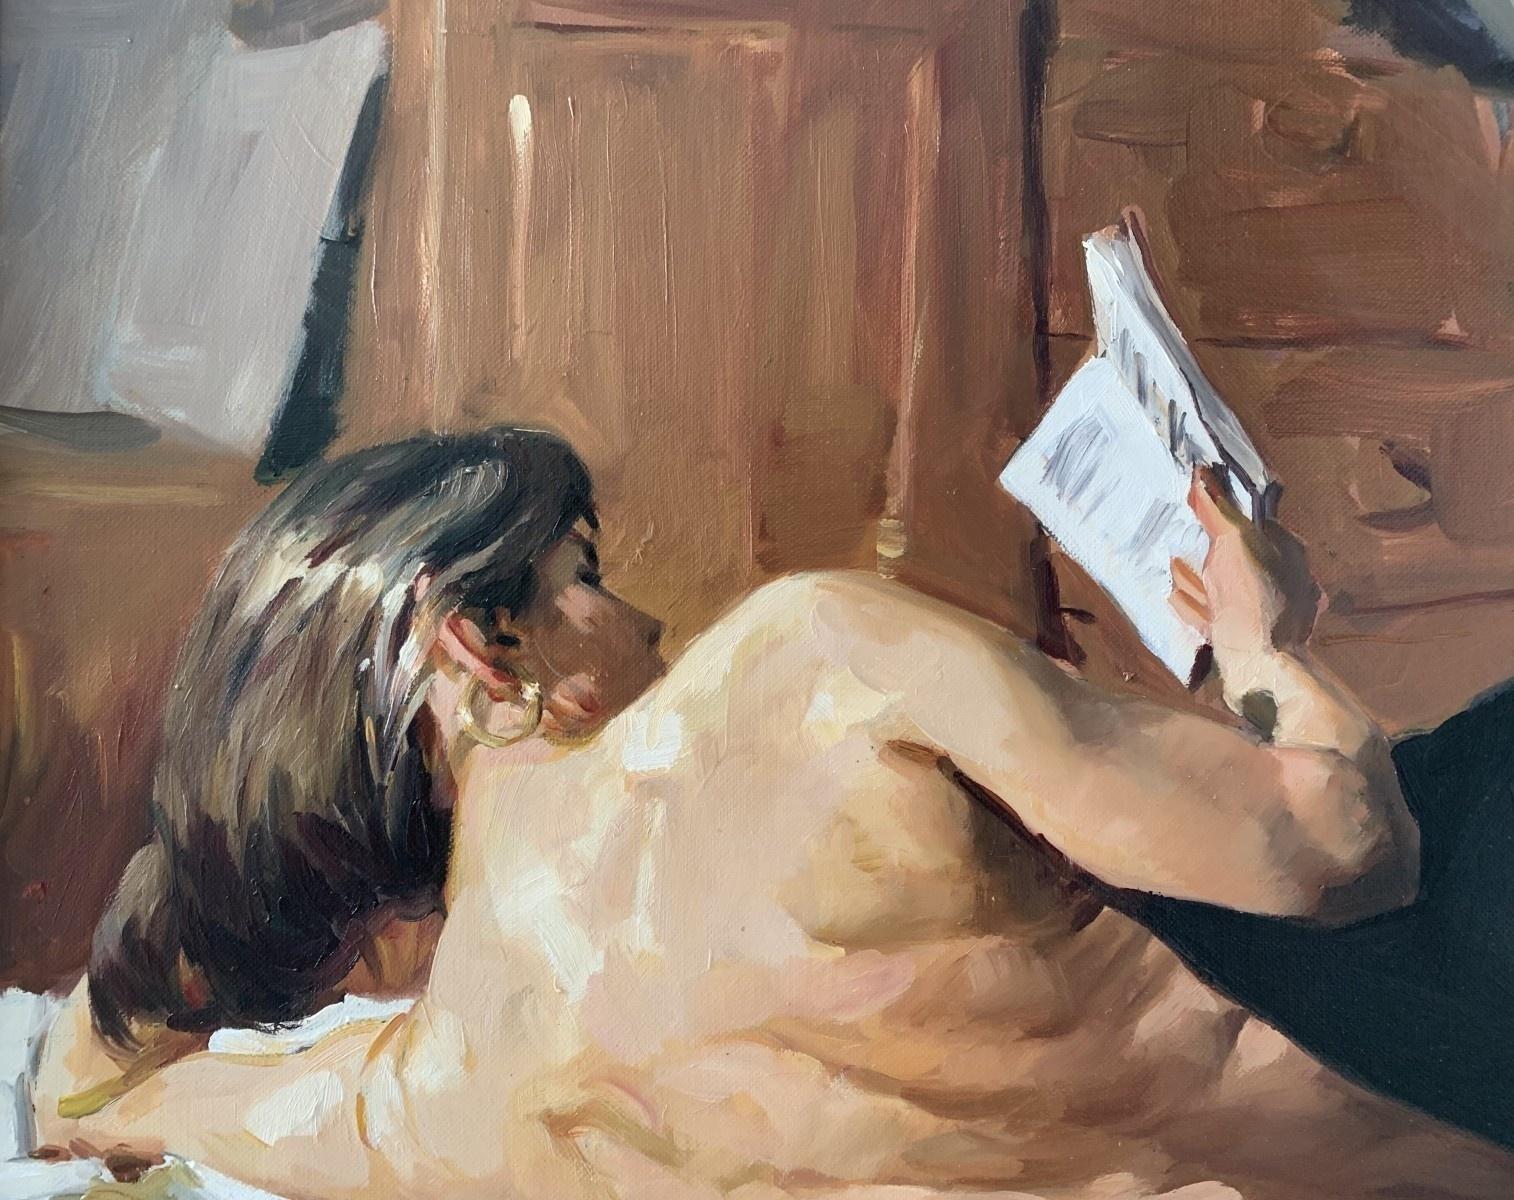 Reading - Peinture à l'huile d'un portrait de femme nue, réaliste, artiste polonaise - Painting de Janusz Szpyt